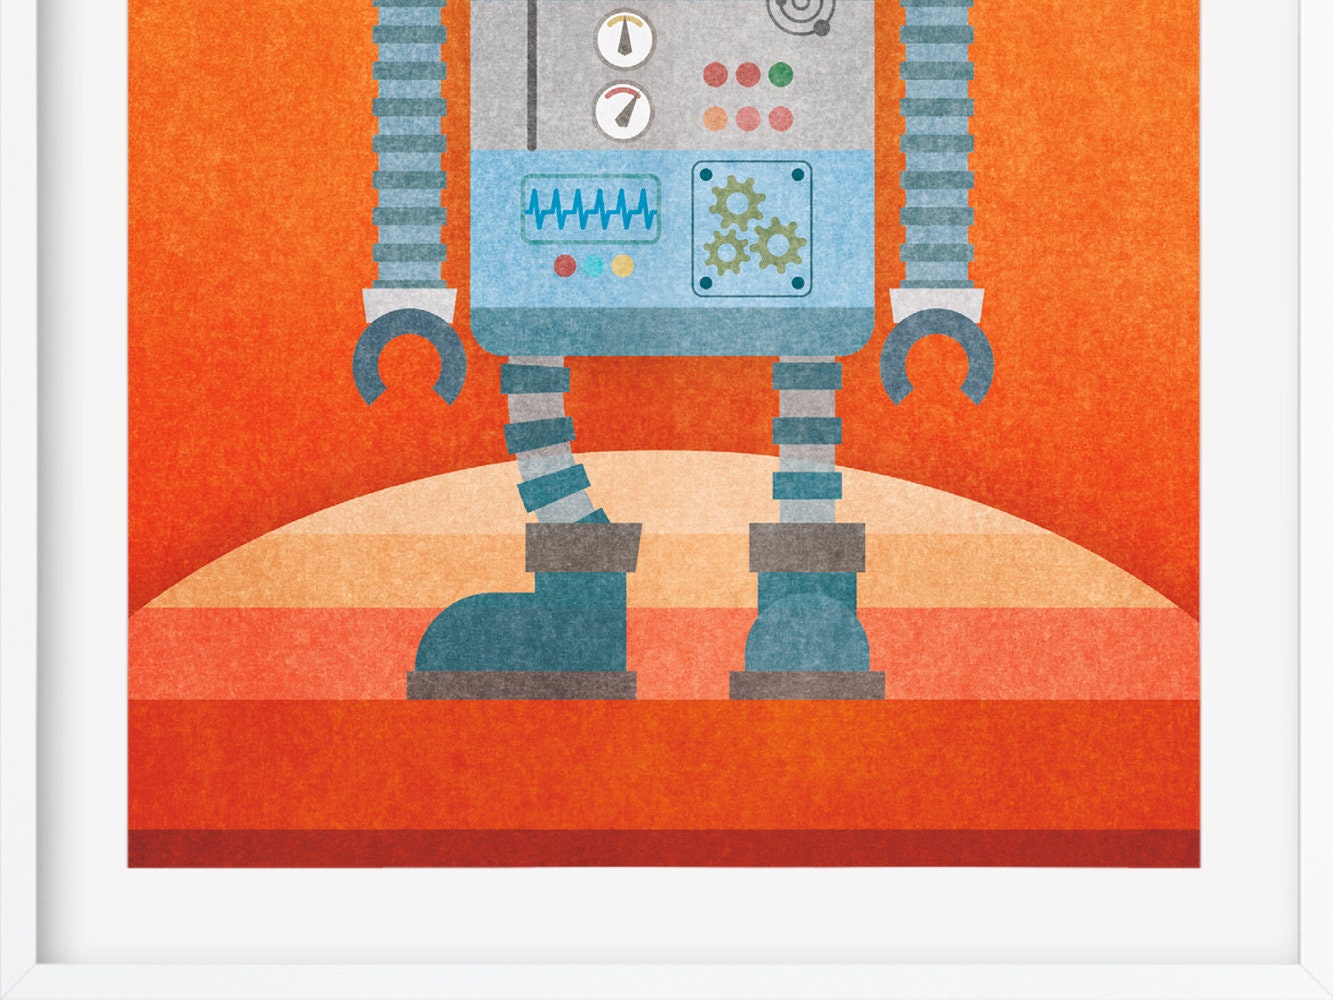 DRUCK ›Kleiner Roboter‹, Wanddeko, Kinderzimmer, Poster